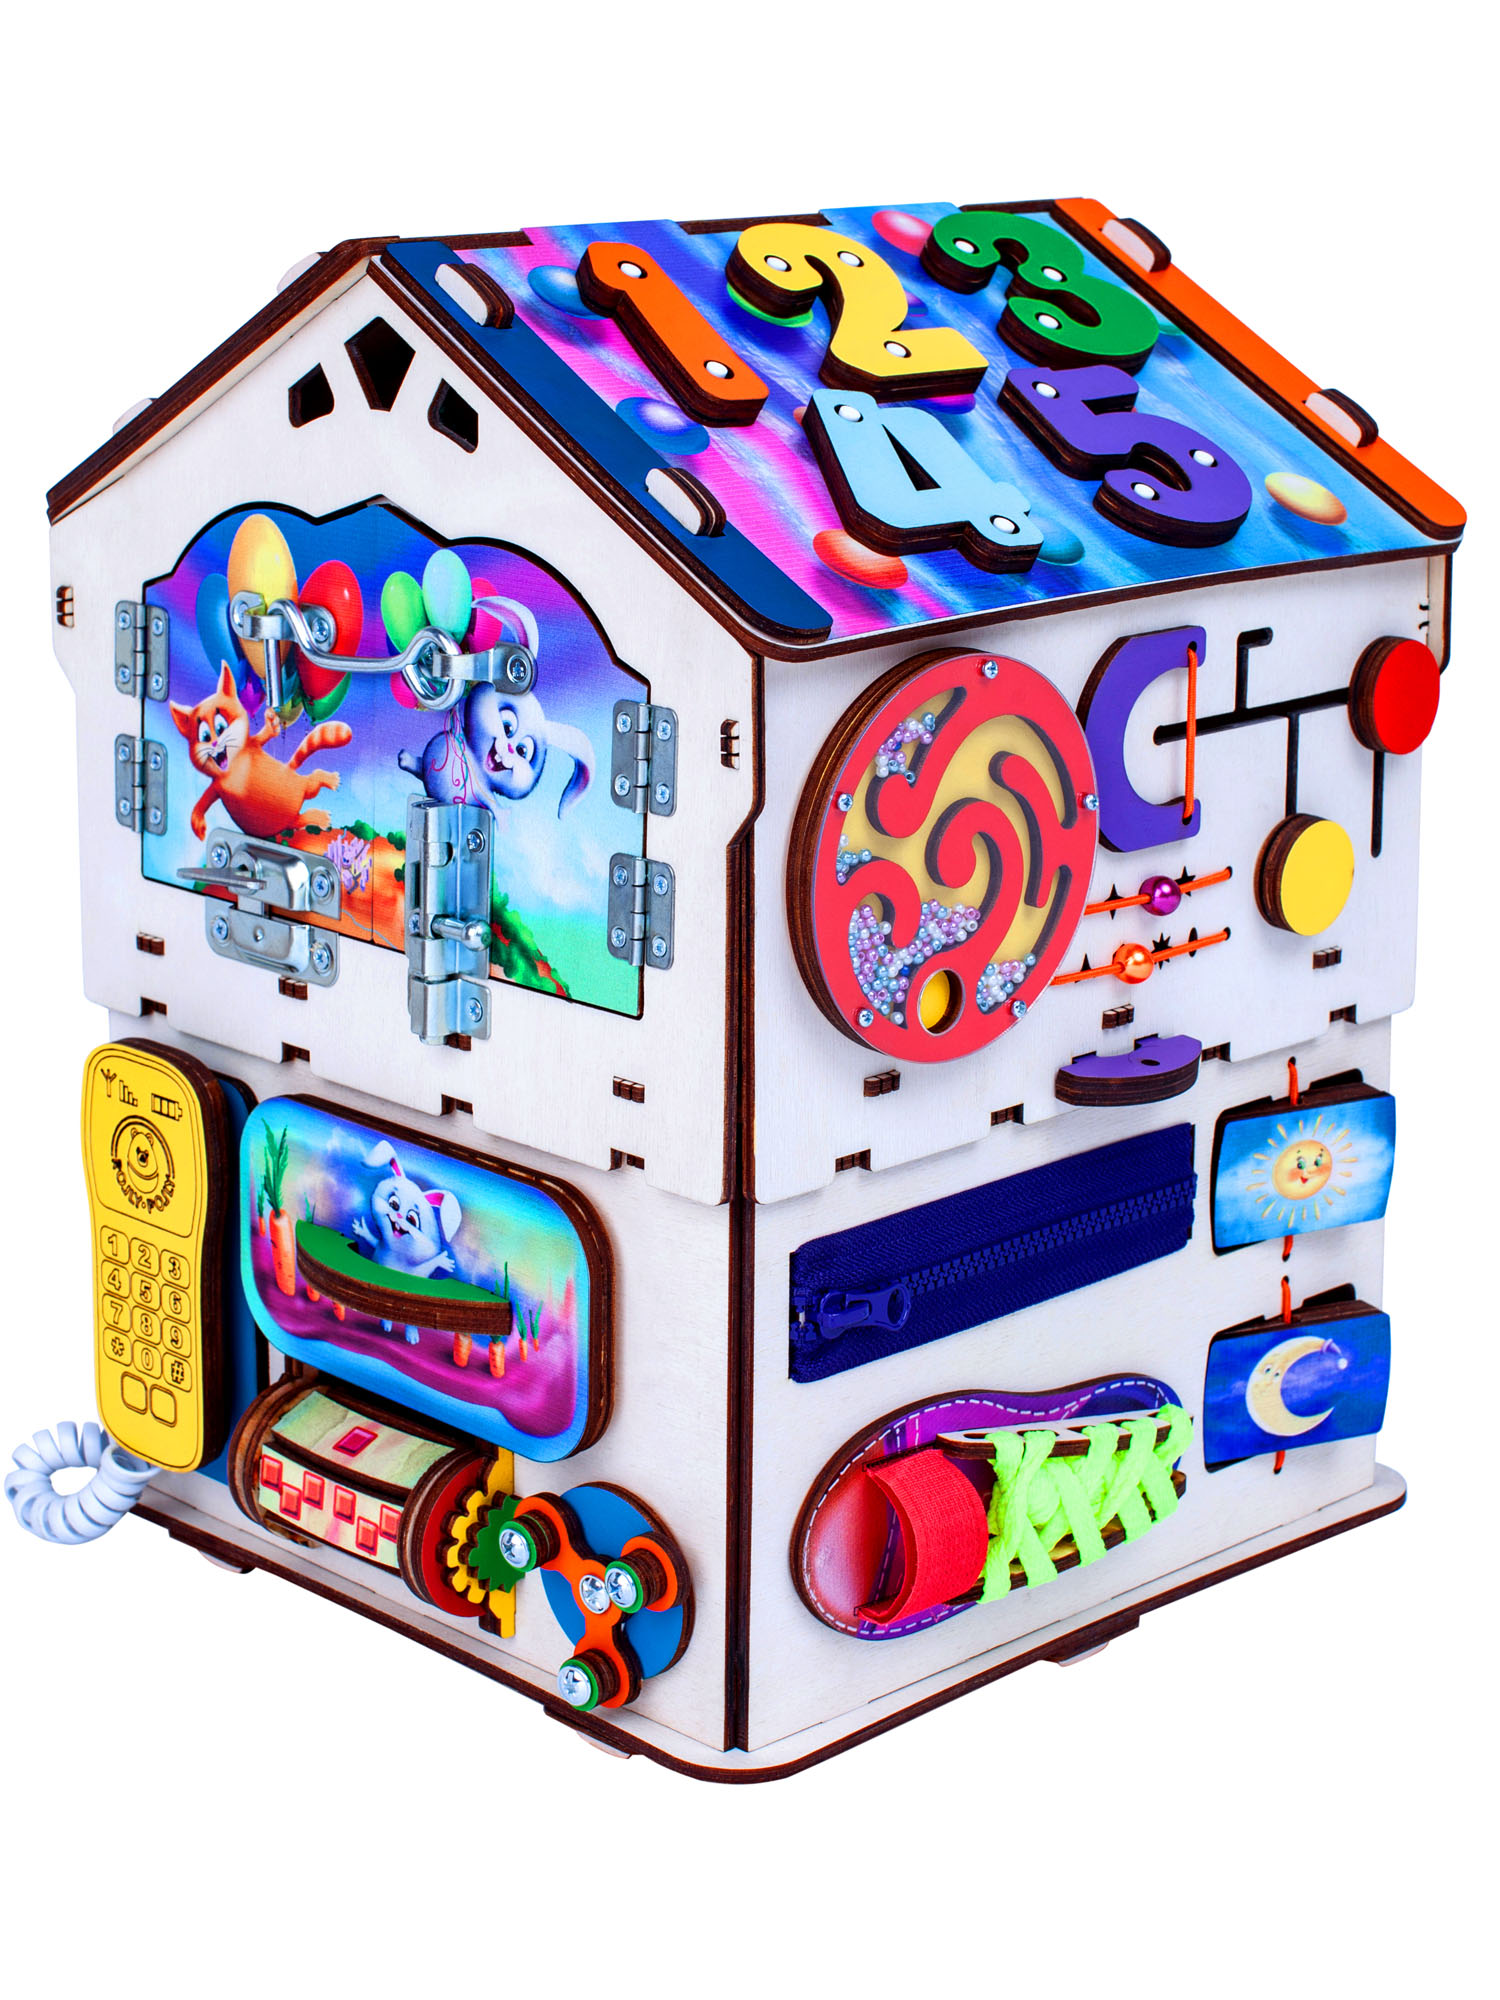 Бизиборд Jolly Kids развивающий бизидом и куб 2 в 1 со светом - фото 4